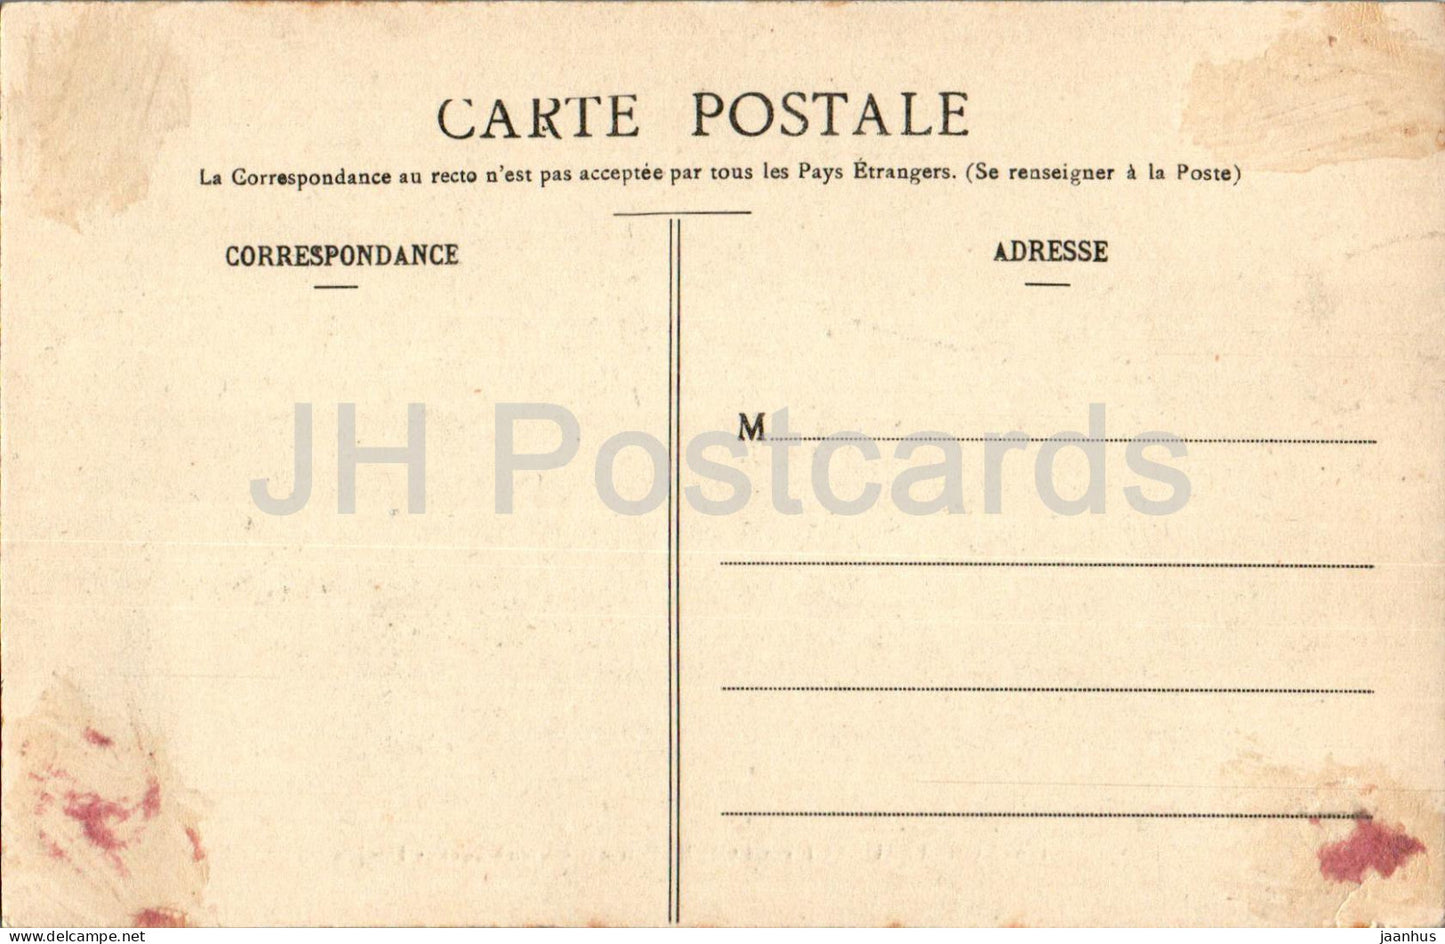 Chateauneuf sur Loire - Vieux Pont et Donjon - 160 - alte Postkarte - Frankreich - gebraucht 